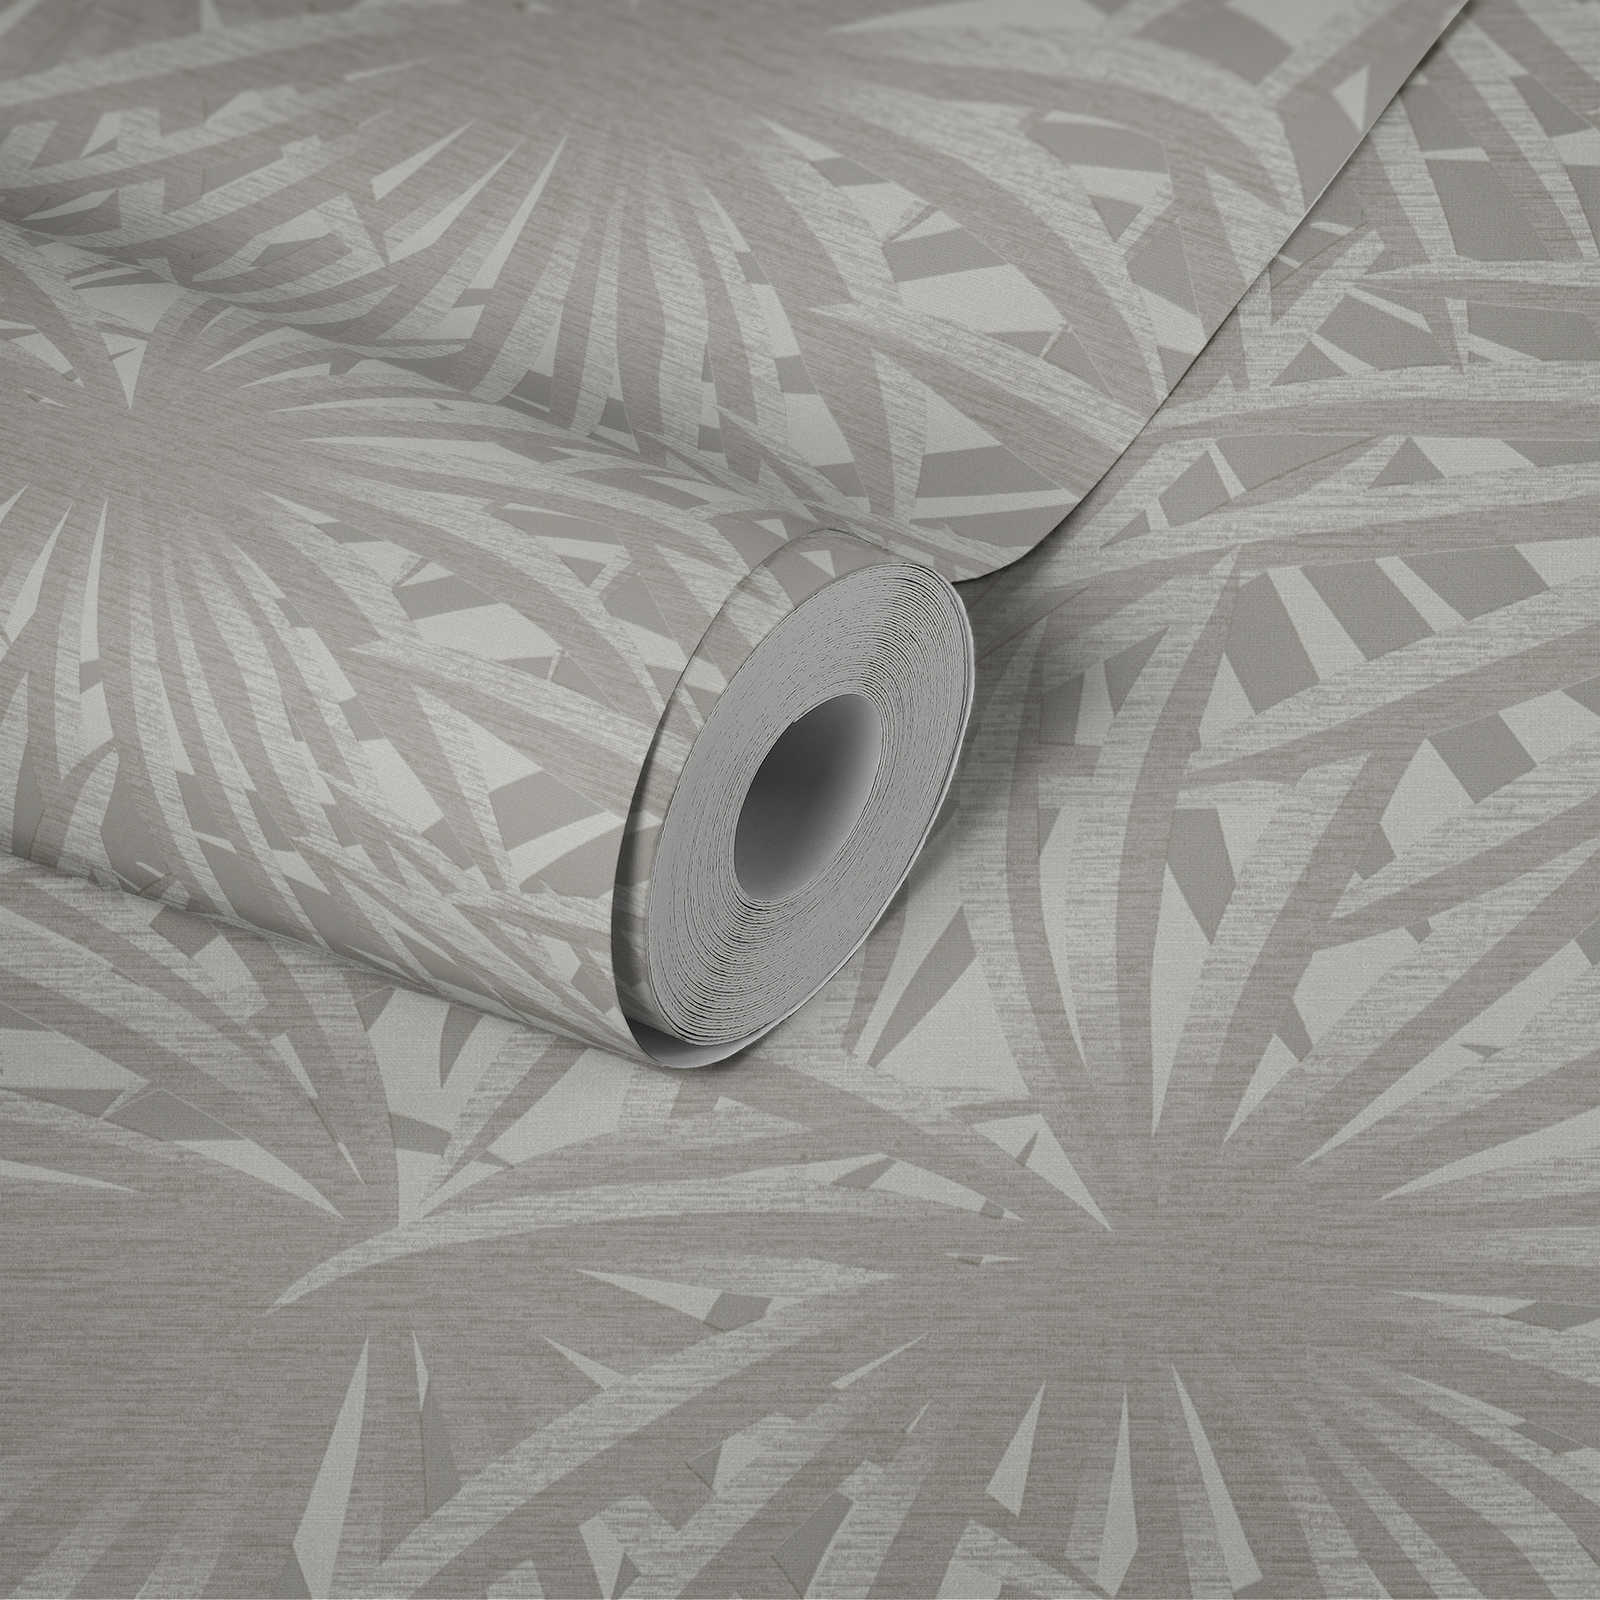             Papier peint intissé motif feuilles avec éclat métallique - gris, métallique, blanc
        